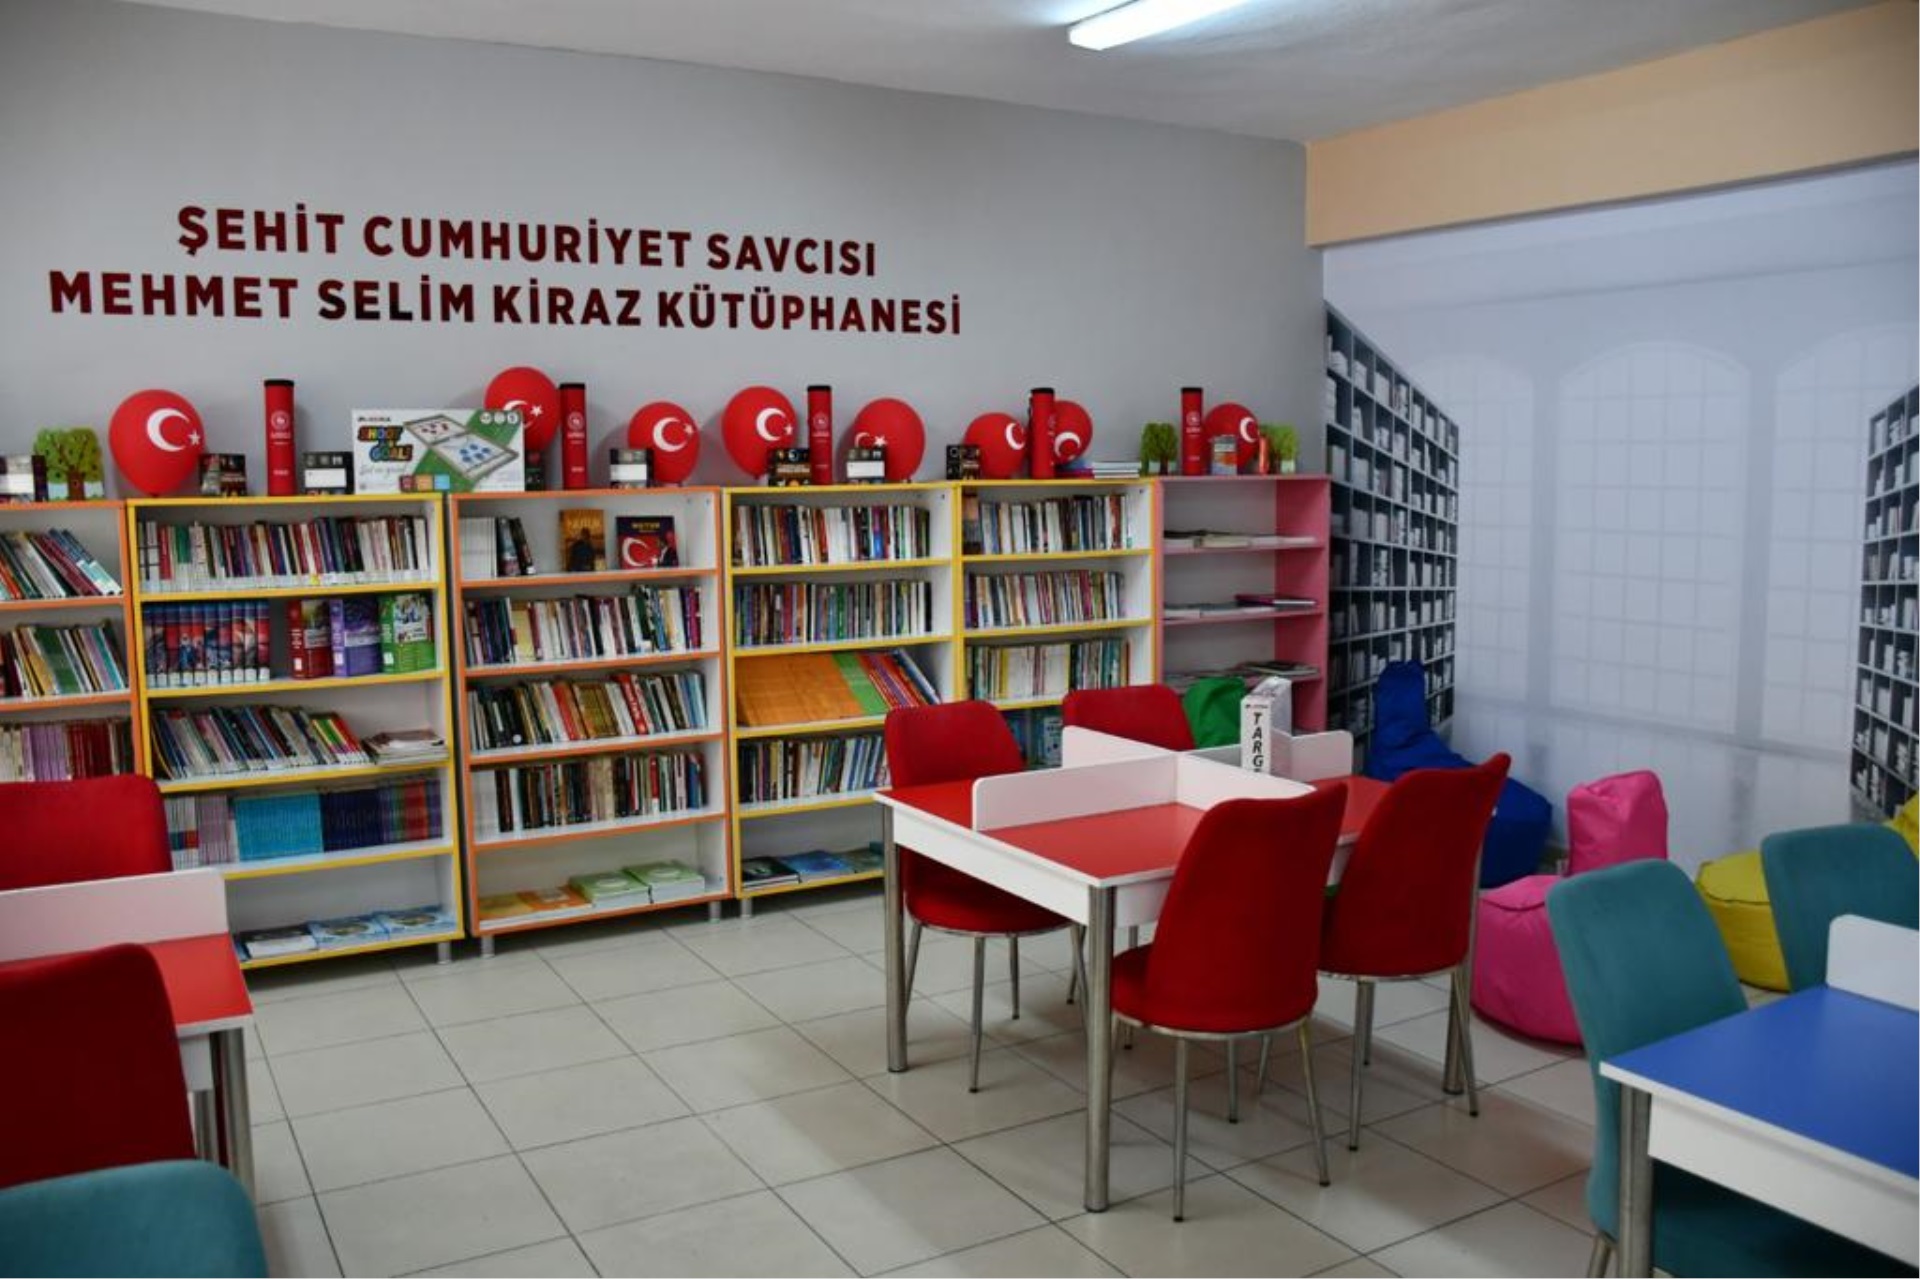 Siirt Cumhuriyet Başsavcılığı Tarafından Düzenlenen “Şehit Savcı Mehmet Selim Kiraz Kütüphanesi“ Açılışı Yapıldı